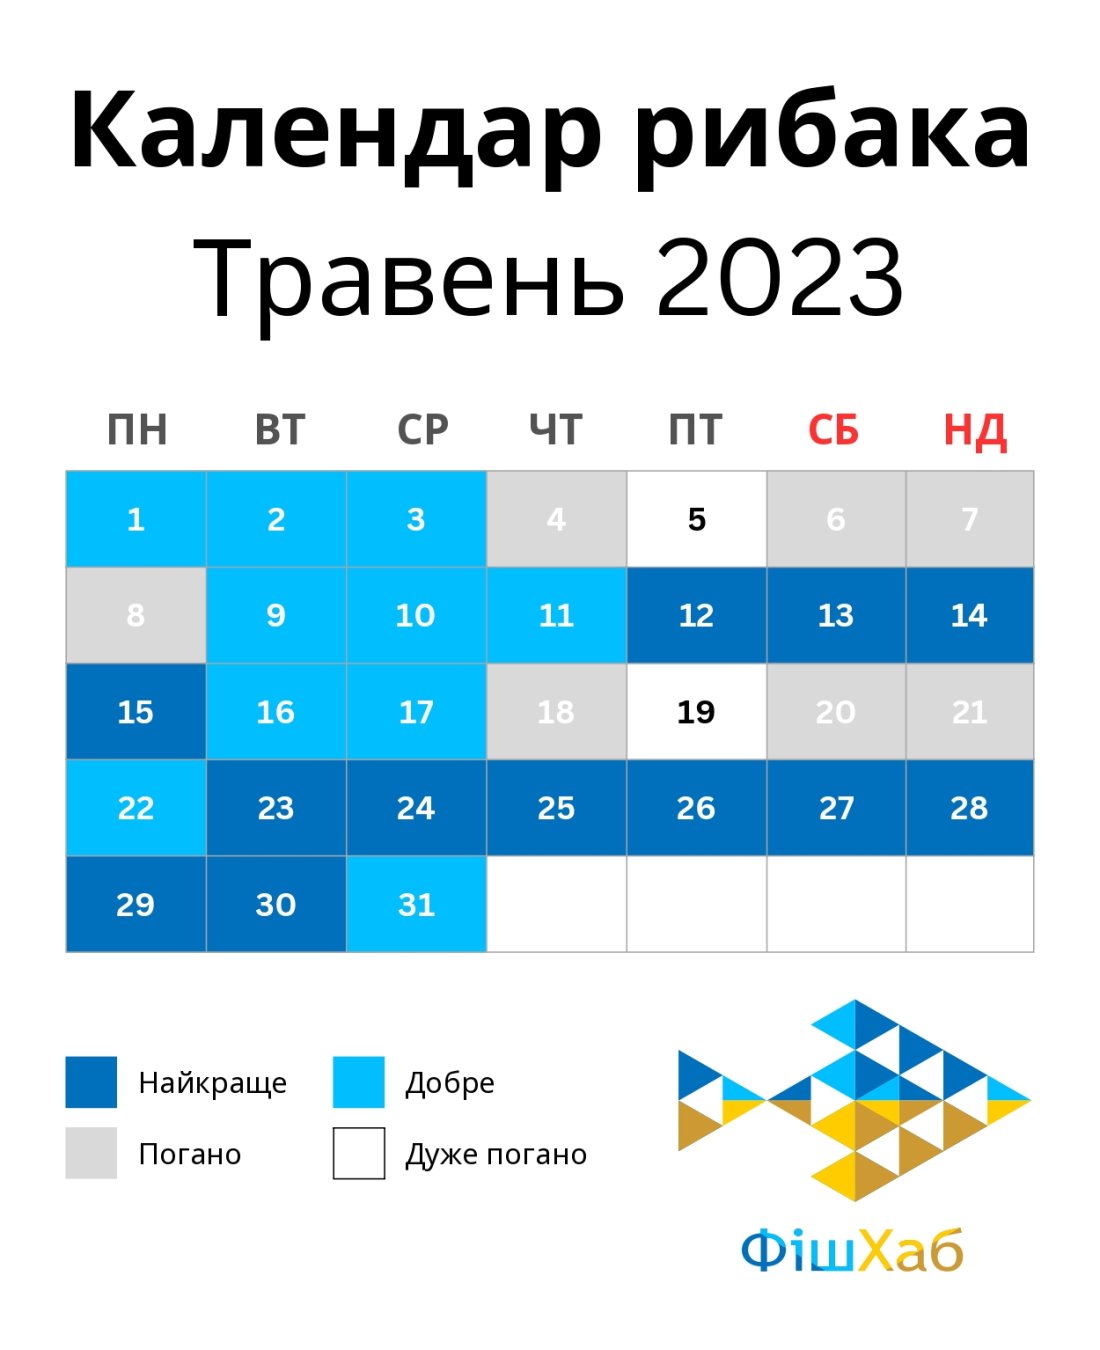 Календар рибака на травень 2023